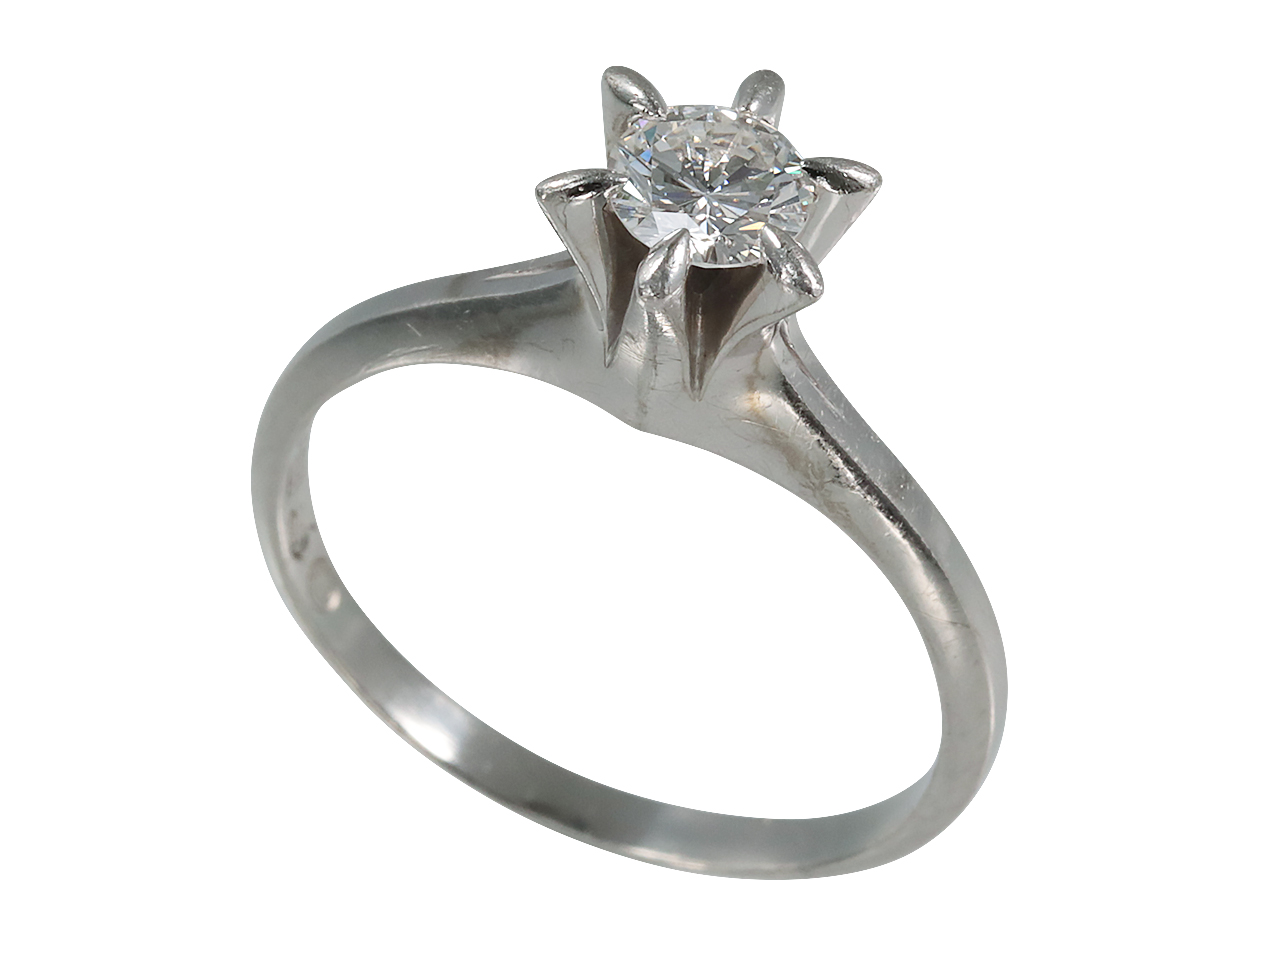 母から祖母のダイヤを受継ぎ、彼女へ贈る婚約指輪にリフォーム